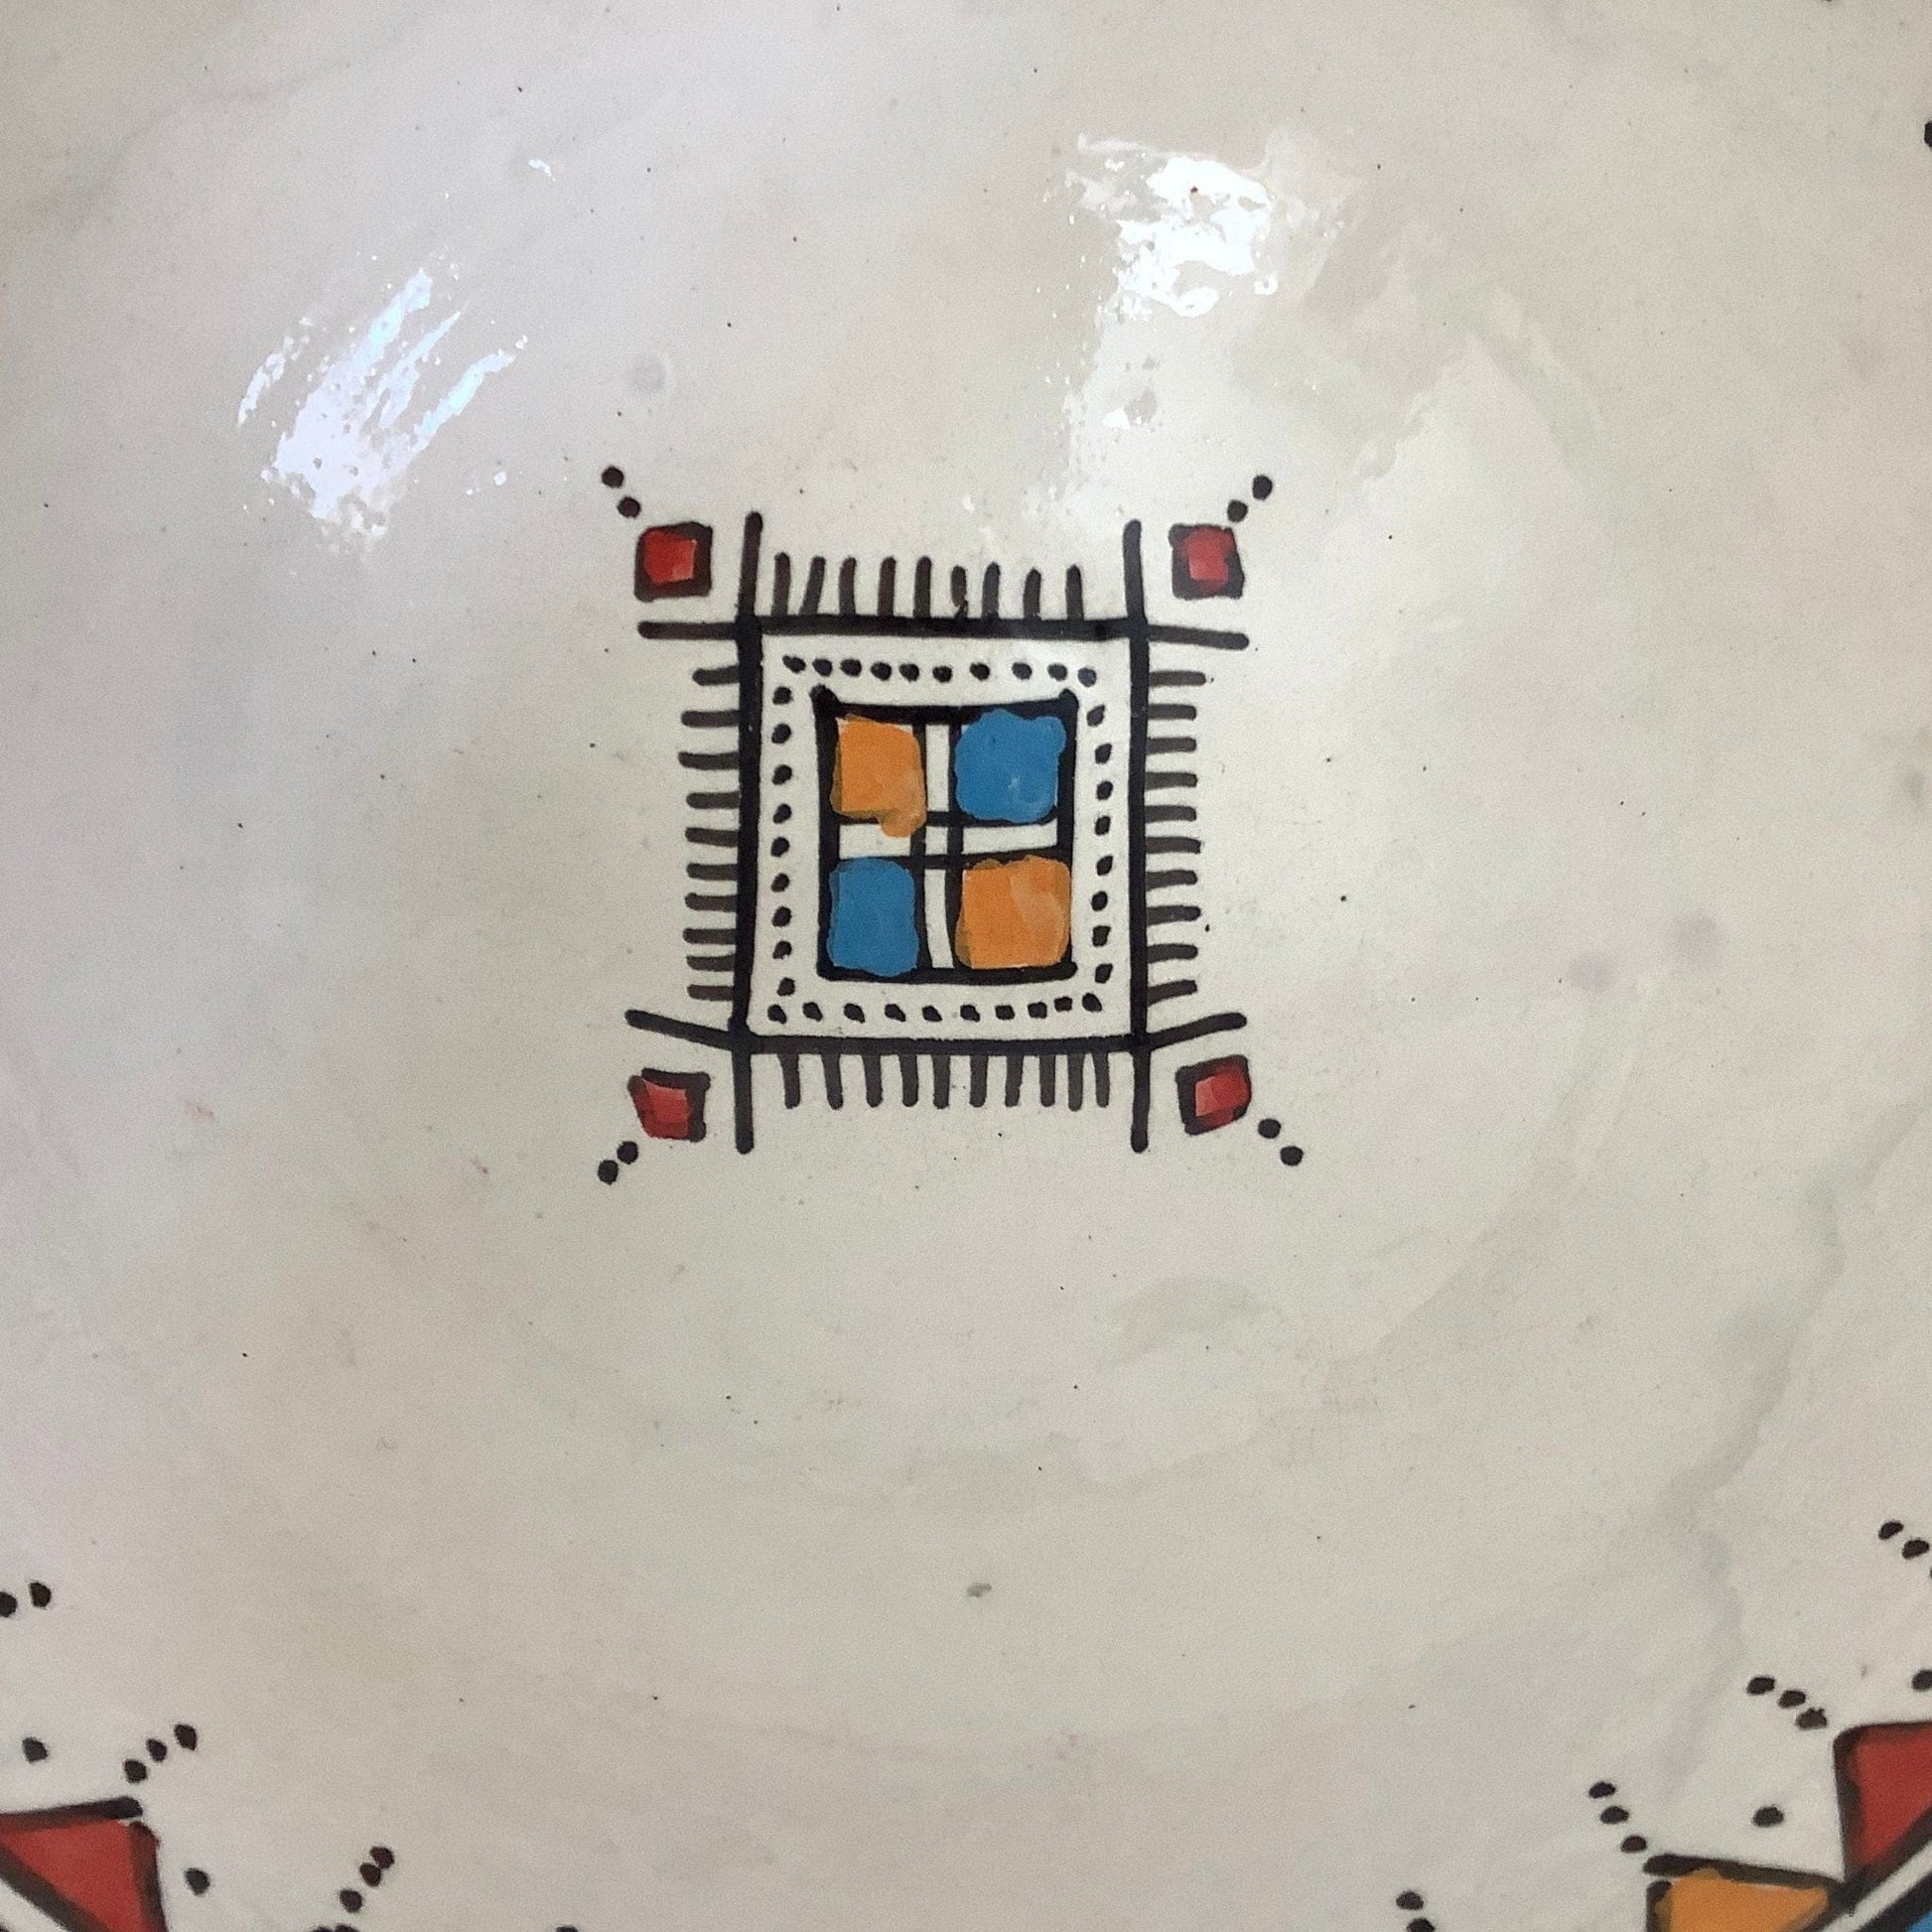 Ethnic Ceramic Bowl Multi / Ceramic / Vintage 1990s